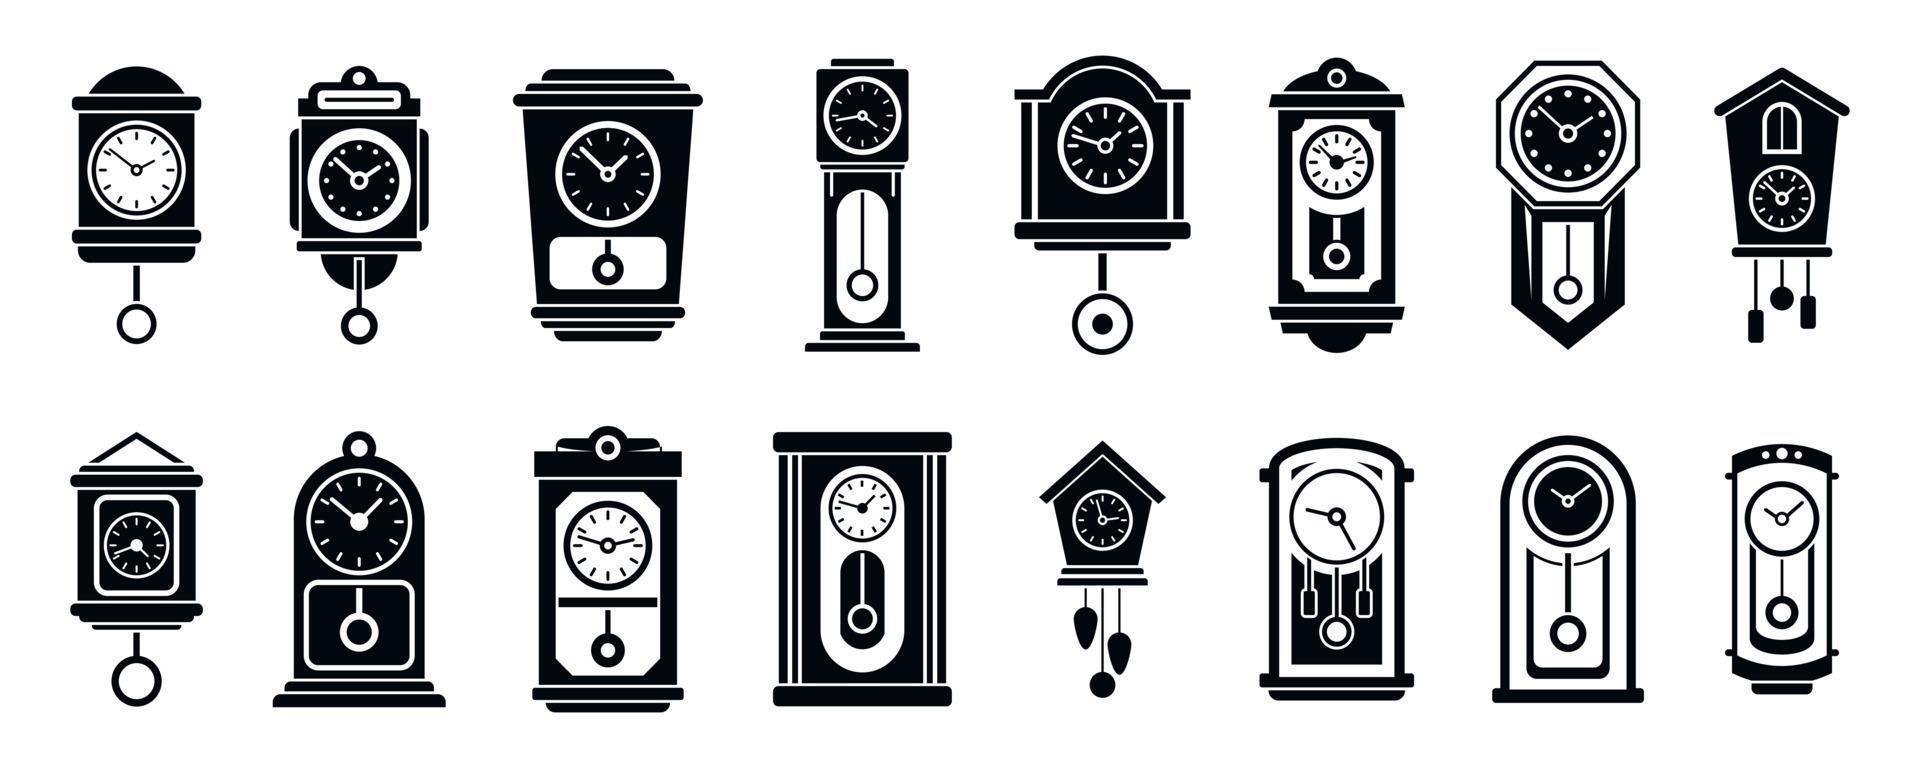 conjunto de iconos de reloj de péndulo de pared, estilo simple vector